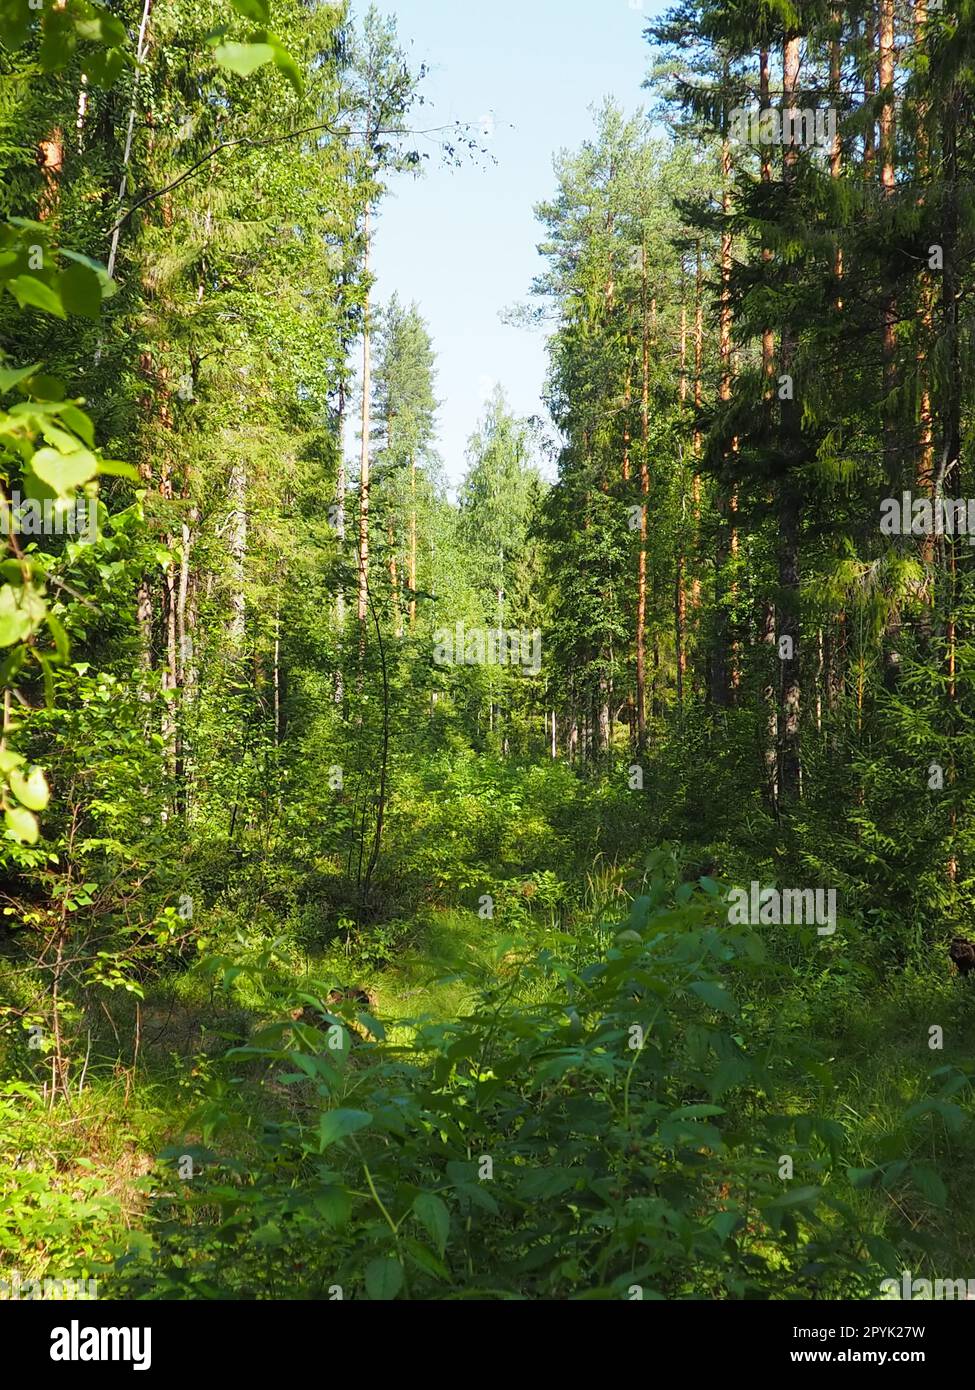 Picea Fichte, eine Gattung von immergrünen Nadelbäumen der Pinienfamilie Pinaceae. Nadelwälder in Karelien. Fichtenäste und Nadeln. Das Problem der Ökologie, der Entwaldung und des Klimawandels Stockfoto